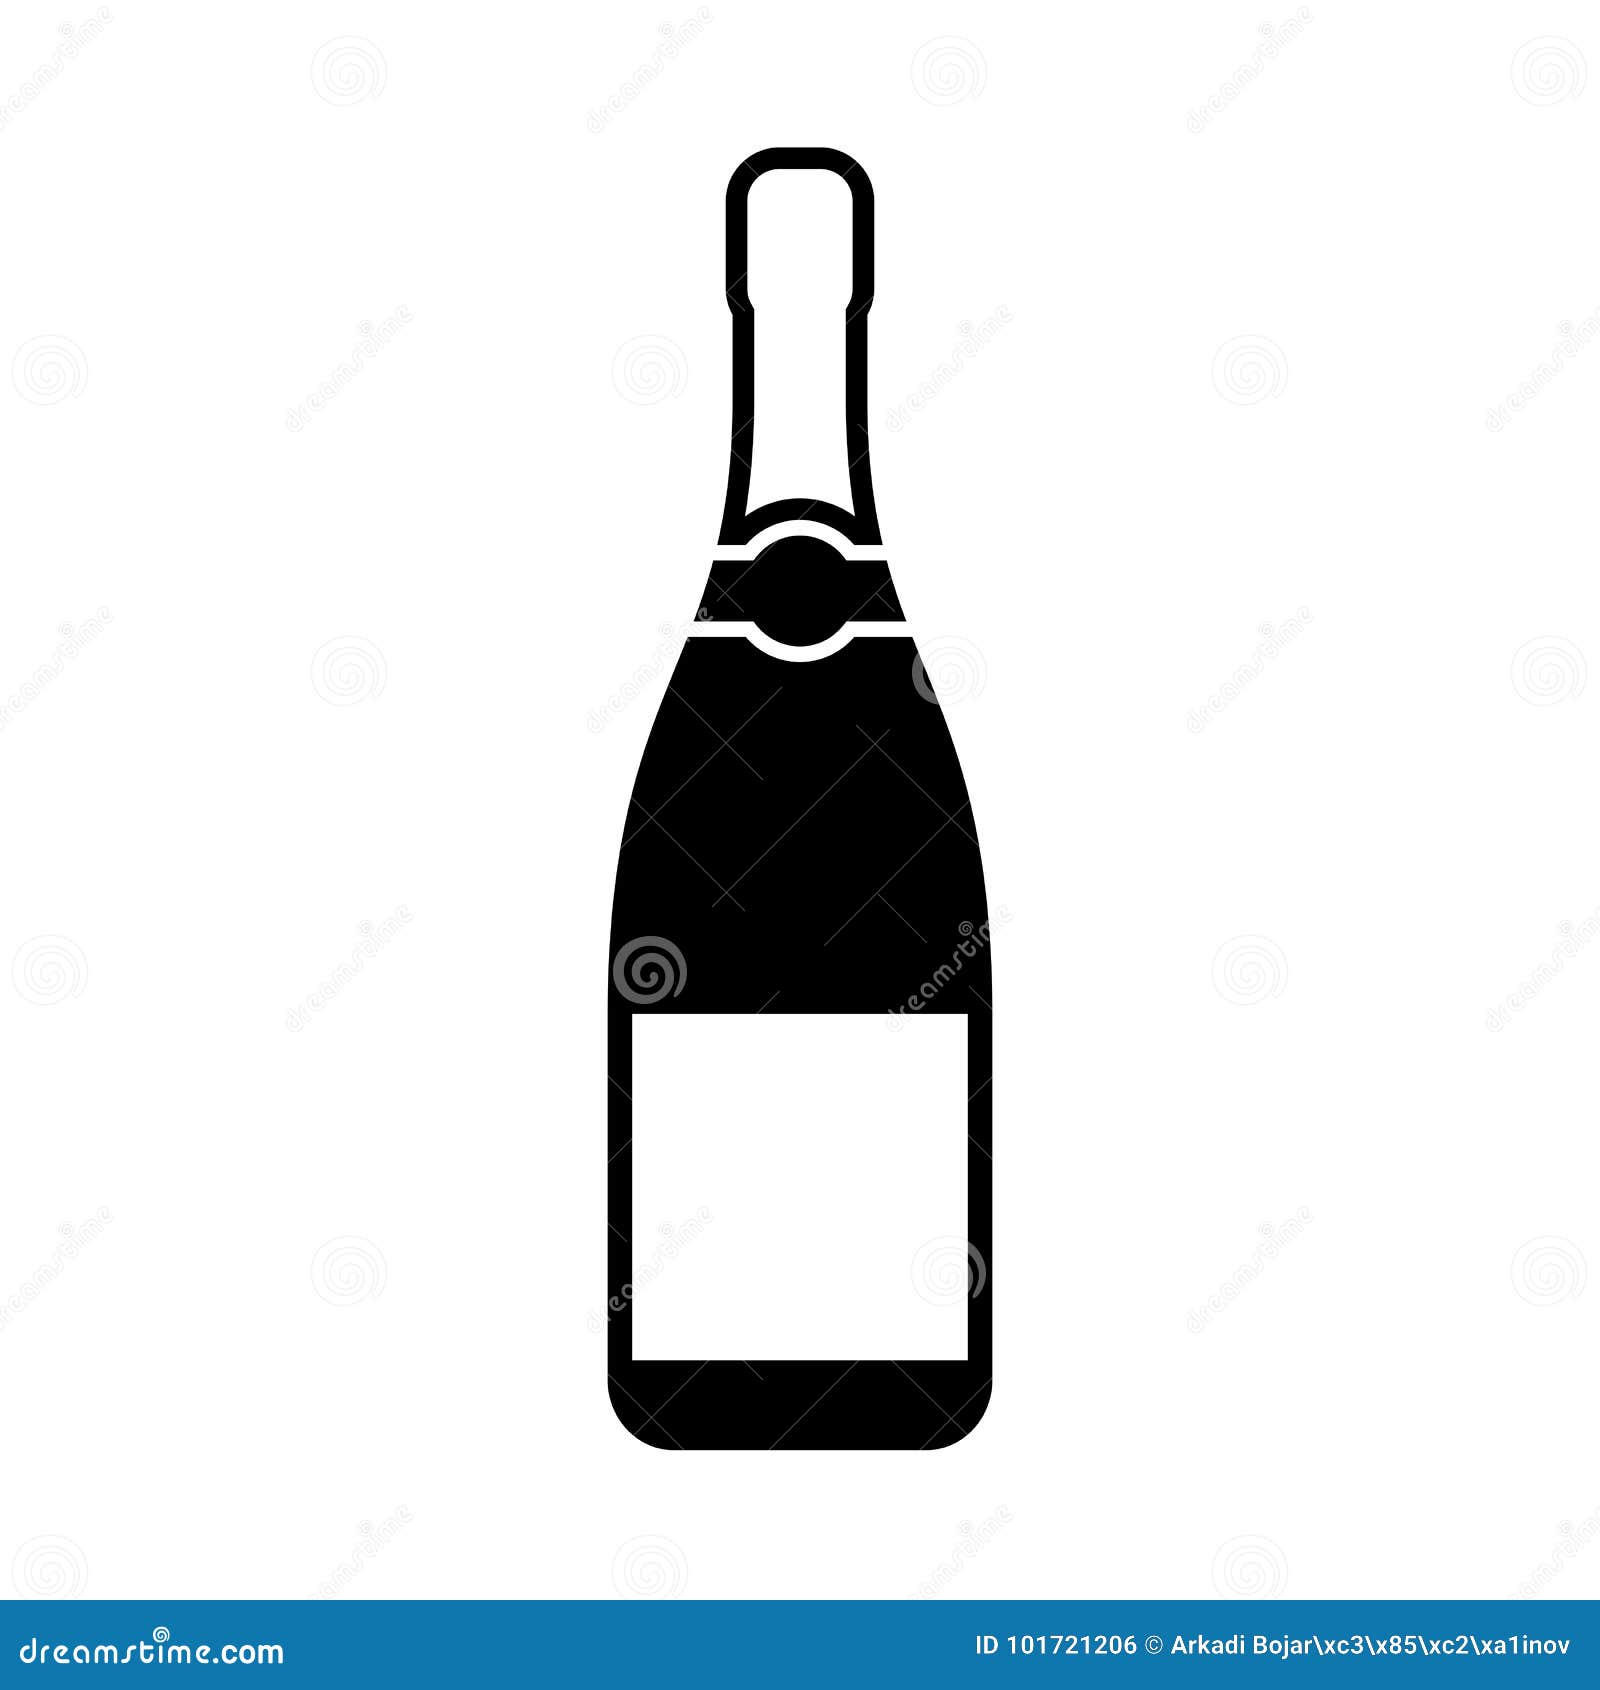 Icone De Silhouette De Bouteille De Champagne Illustration De Vecteur Illustration Du Silhouette Bouteille 101721206